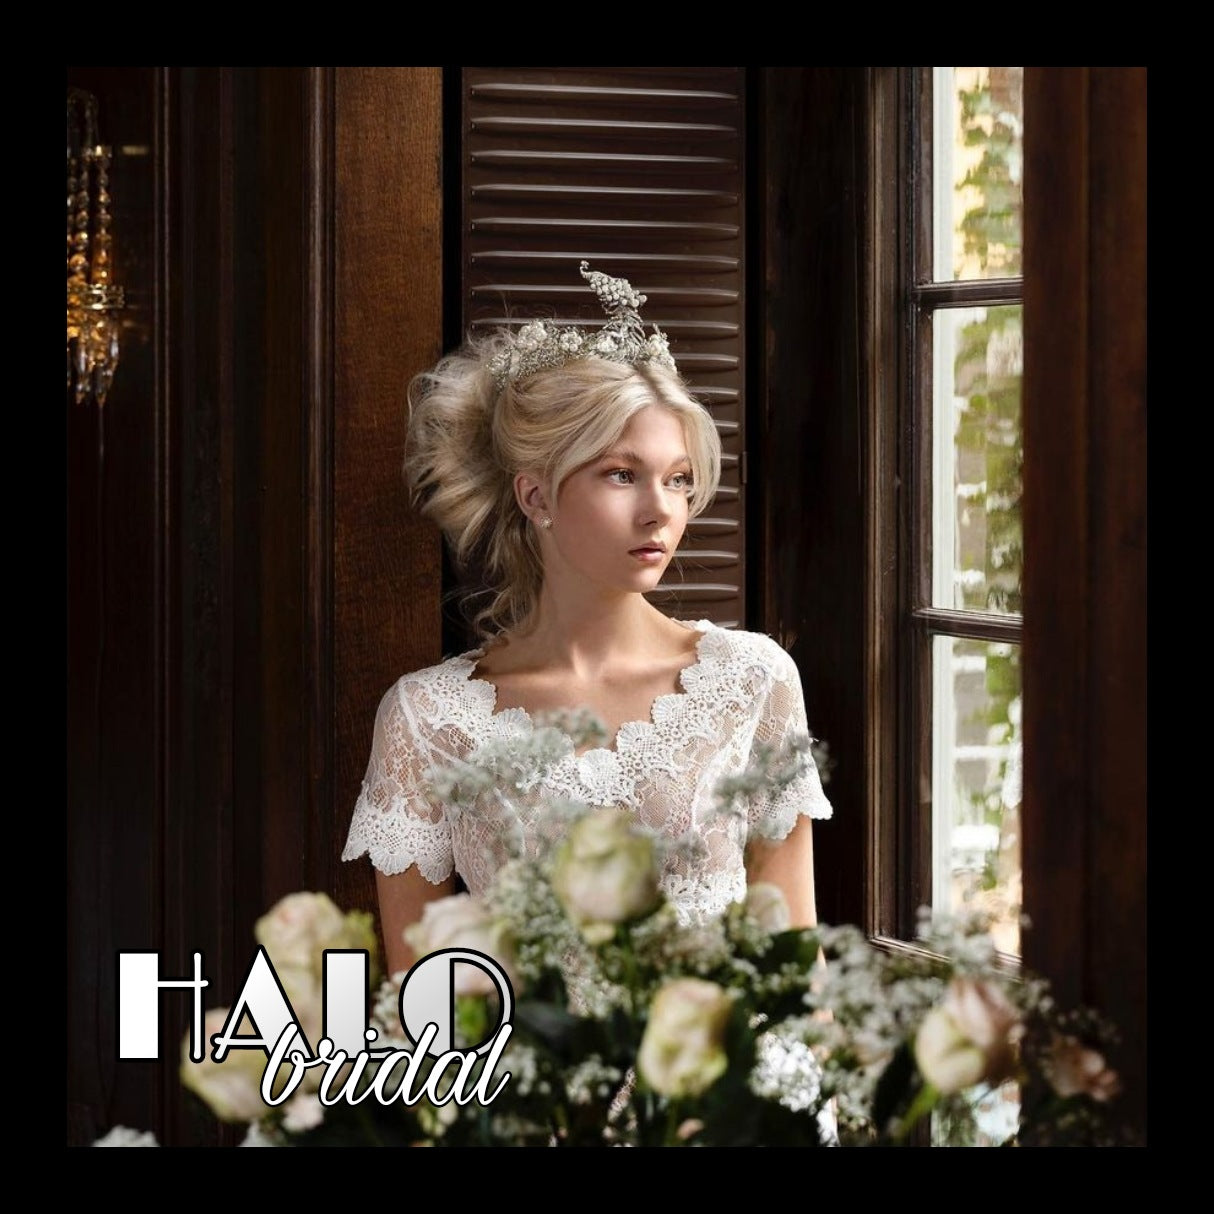 Bridal headpieces & accessories (HALO Bridal by Viveka Gren)